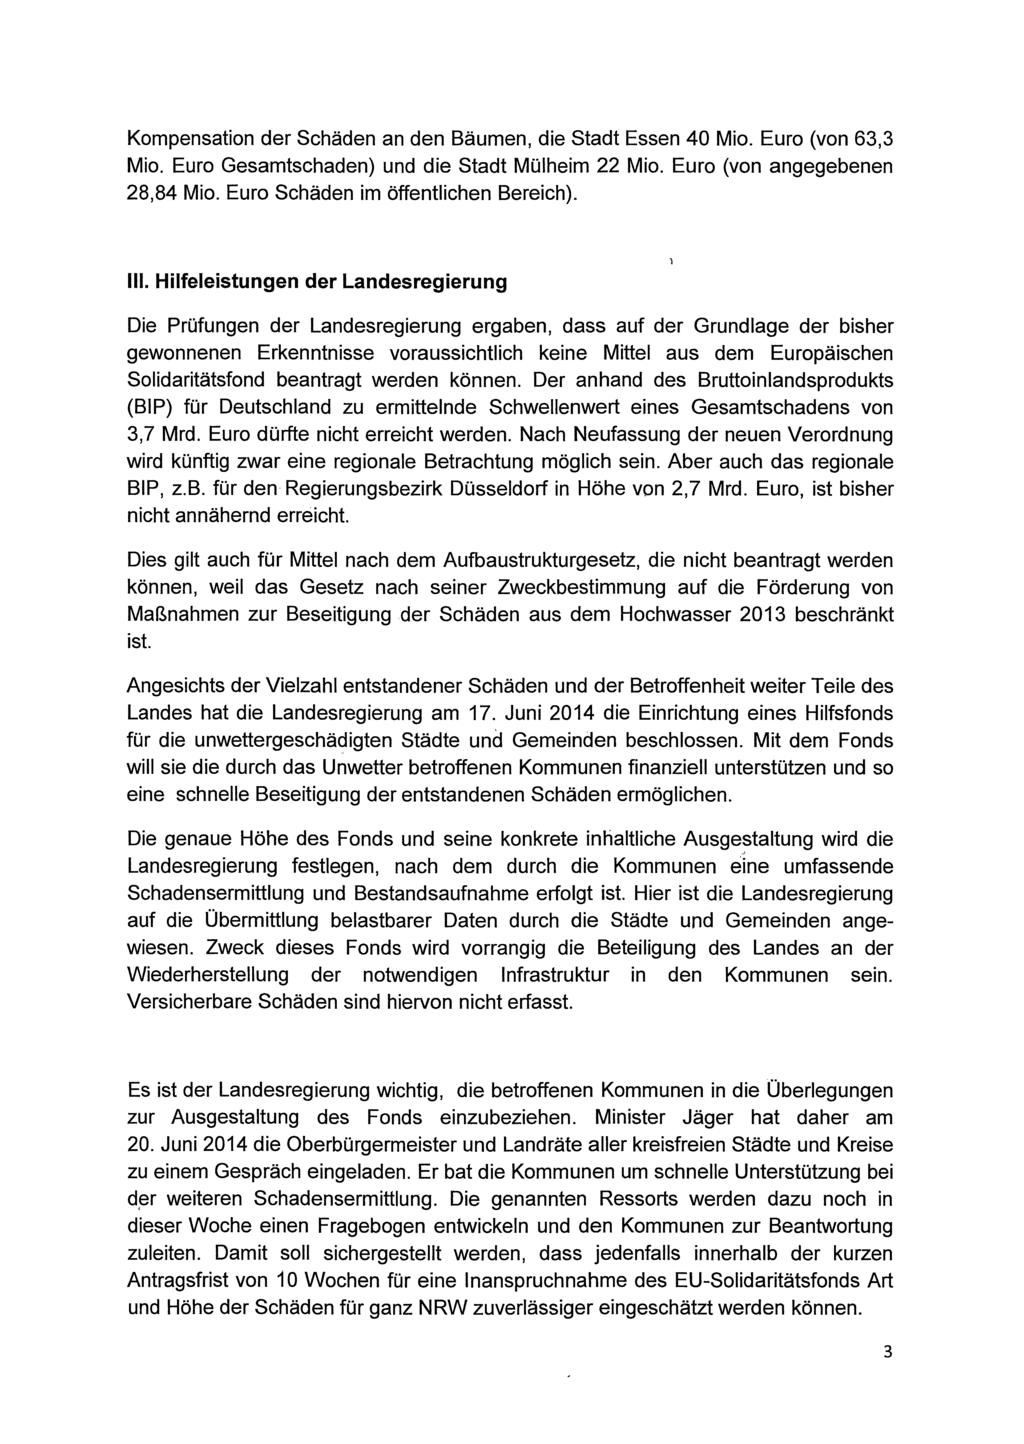 Kompensation der Schäden an den Bäumen, die Stadt Essen 40 Mio. Euro (von 63,3 Mio. Euro Gesamtschaden) und die Stadt Mülheim 22 Mio. Euro (von angegebenen 28,84 Mio.